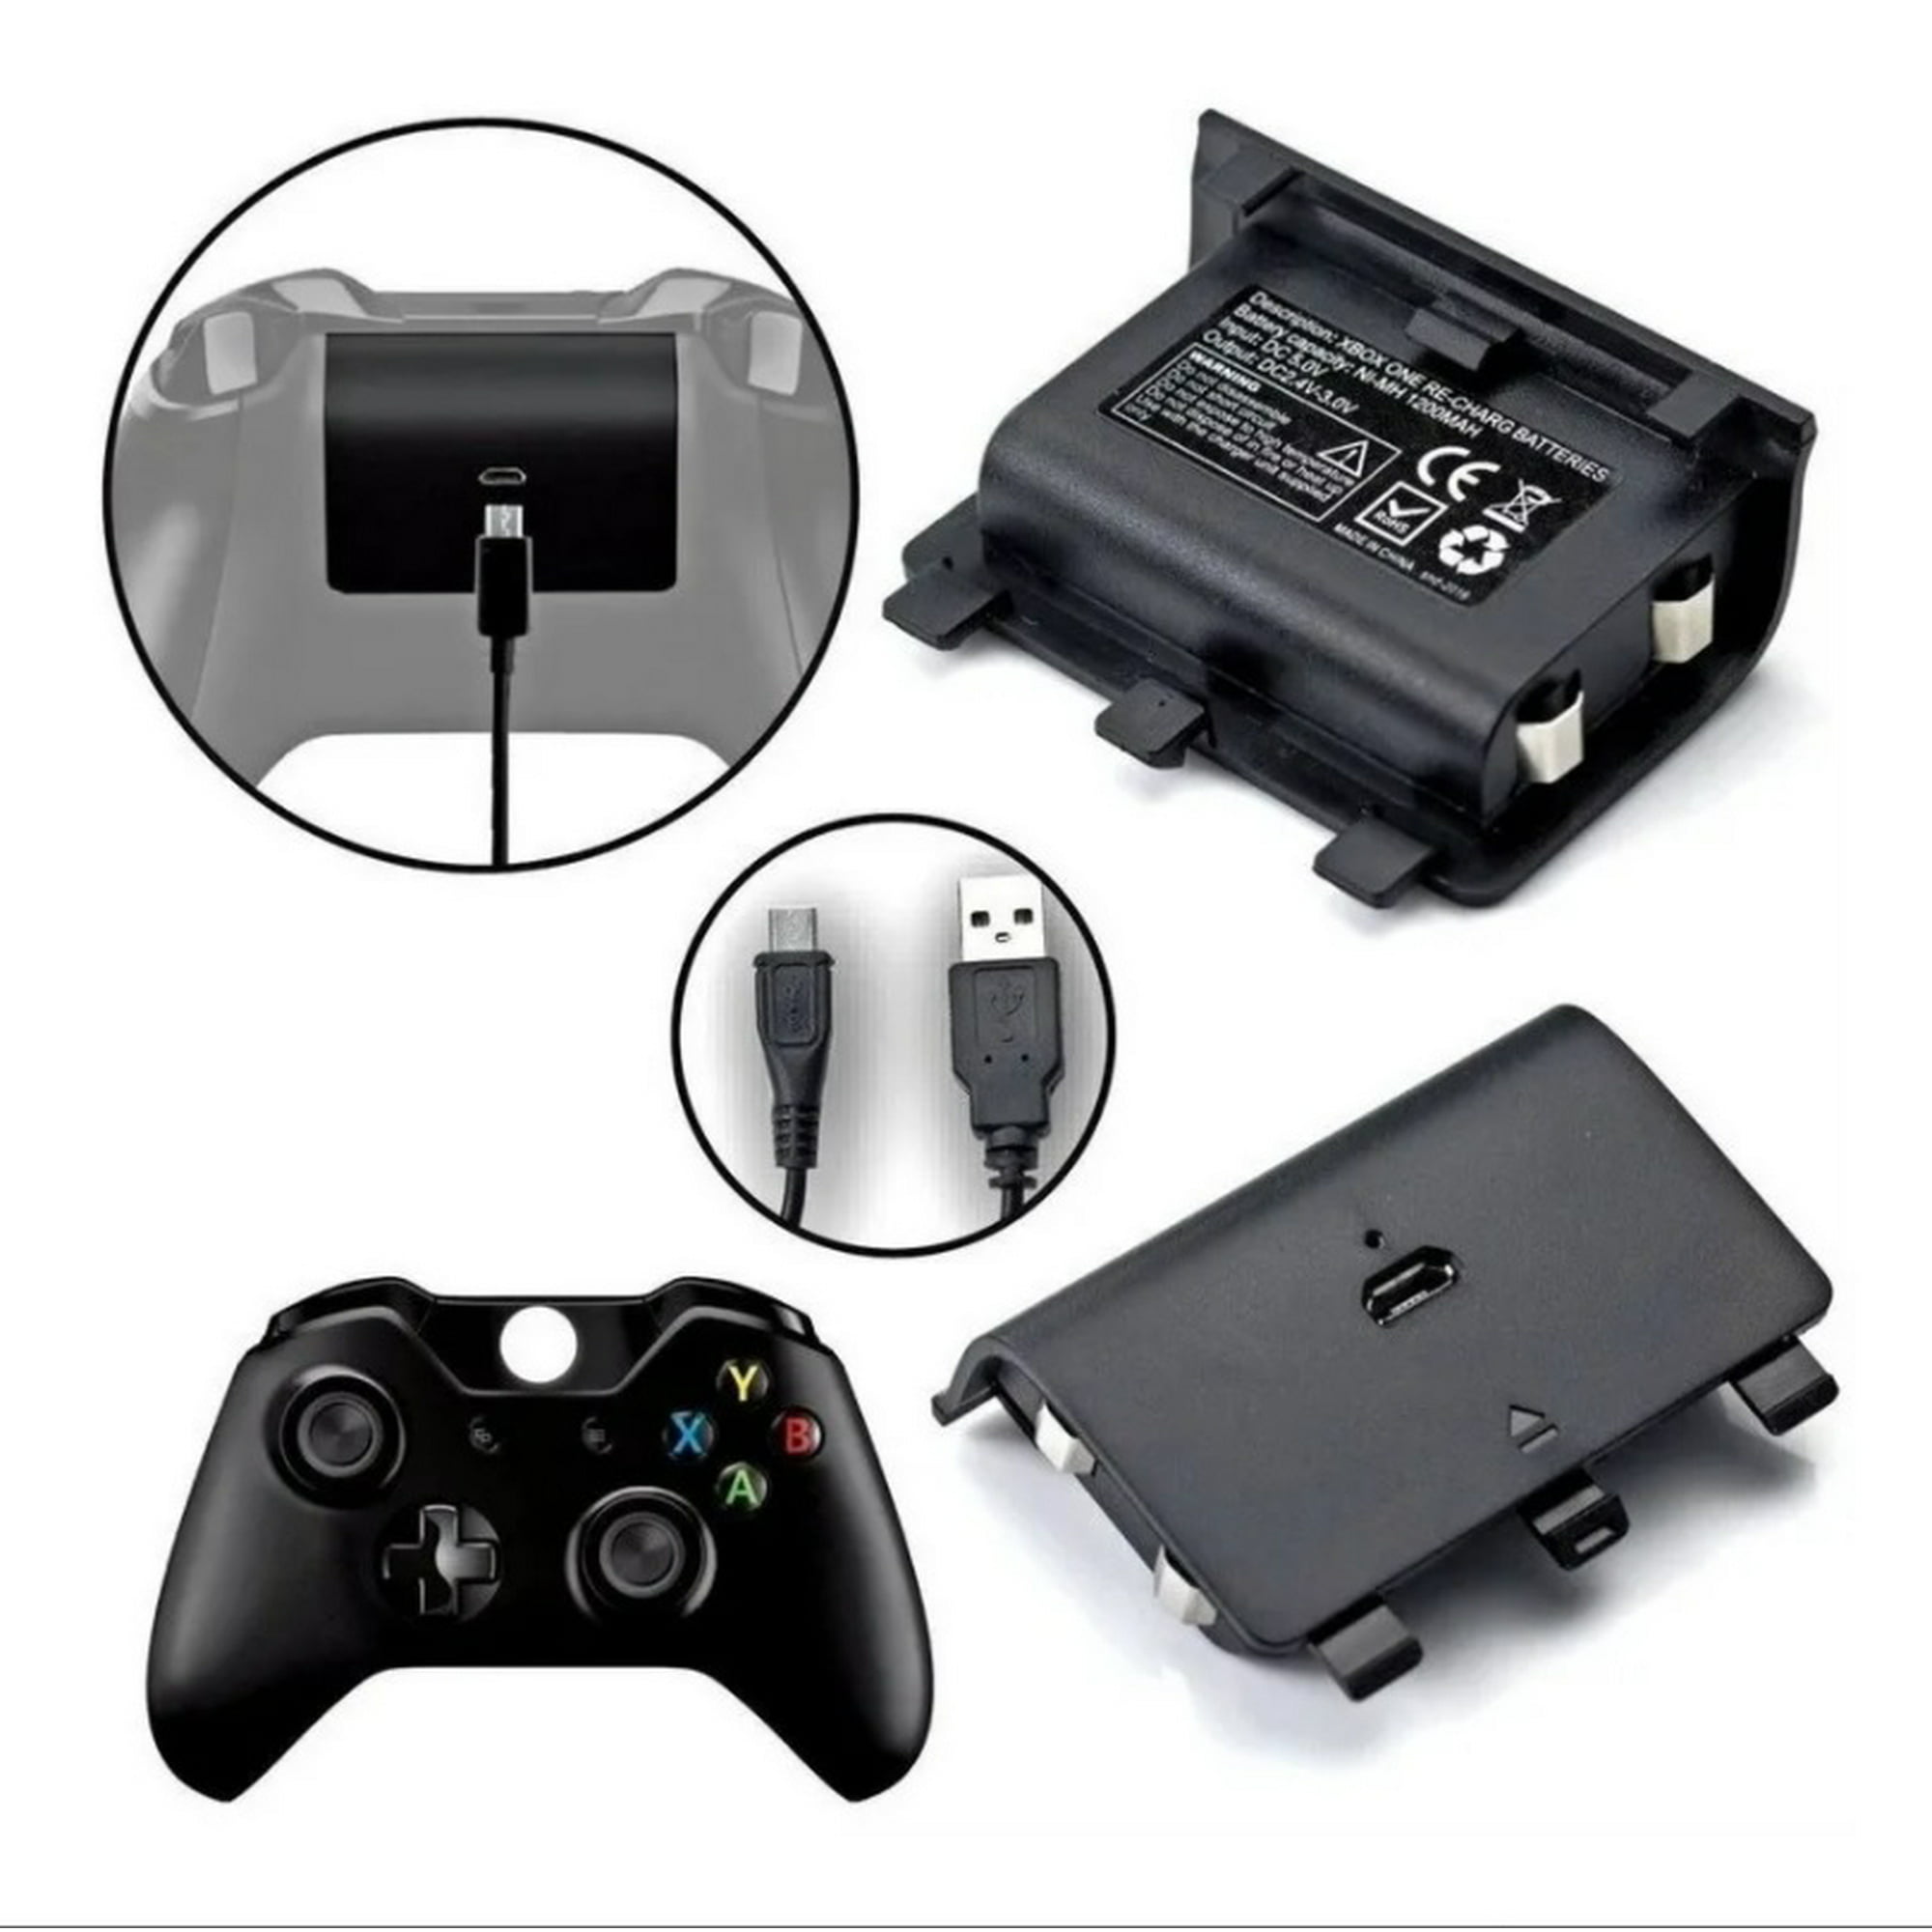 2 Baterías Recargables Carga Y Juega Para Xbox One Pila Genérico micro usb